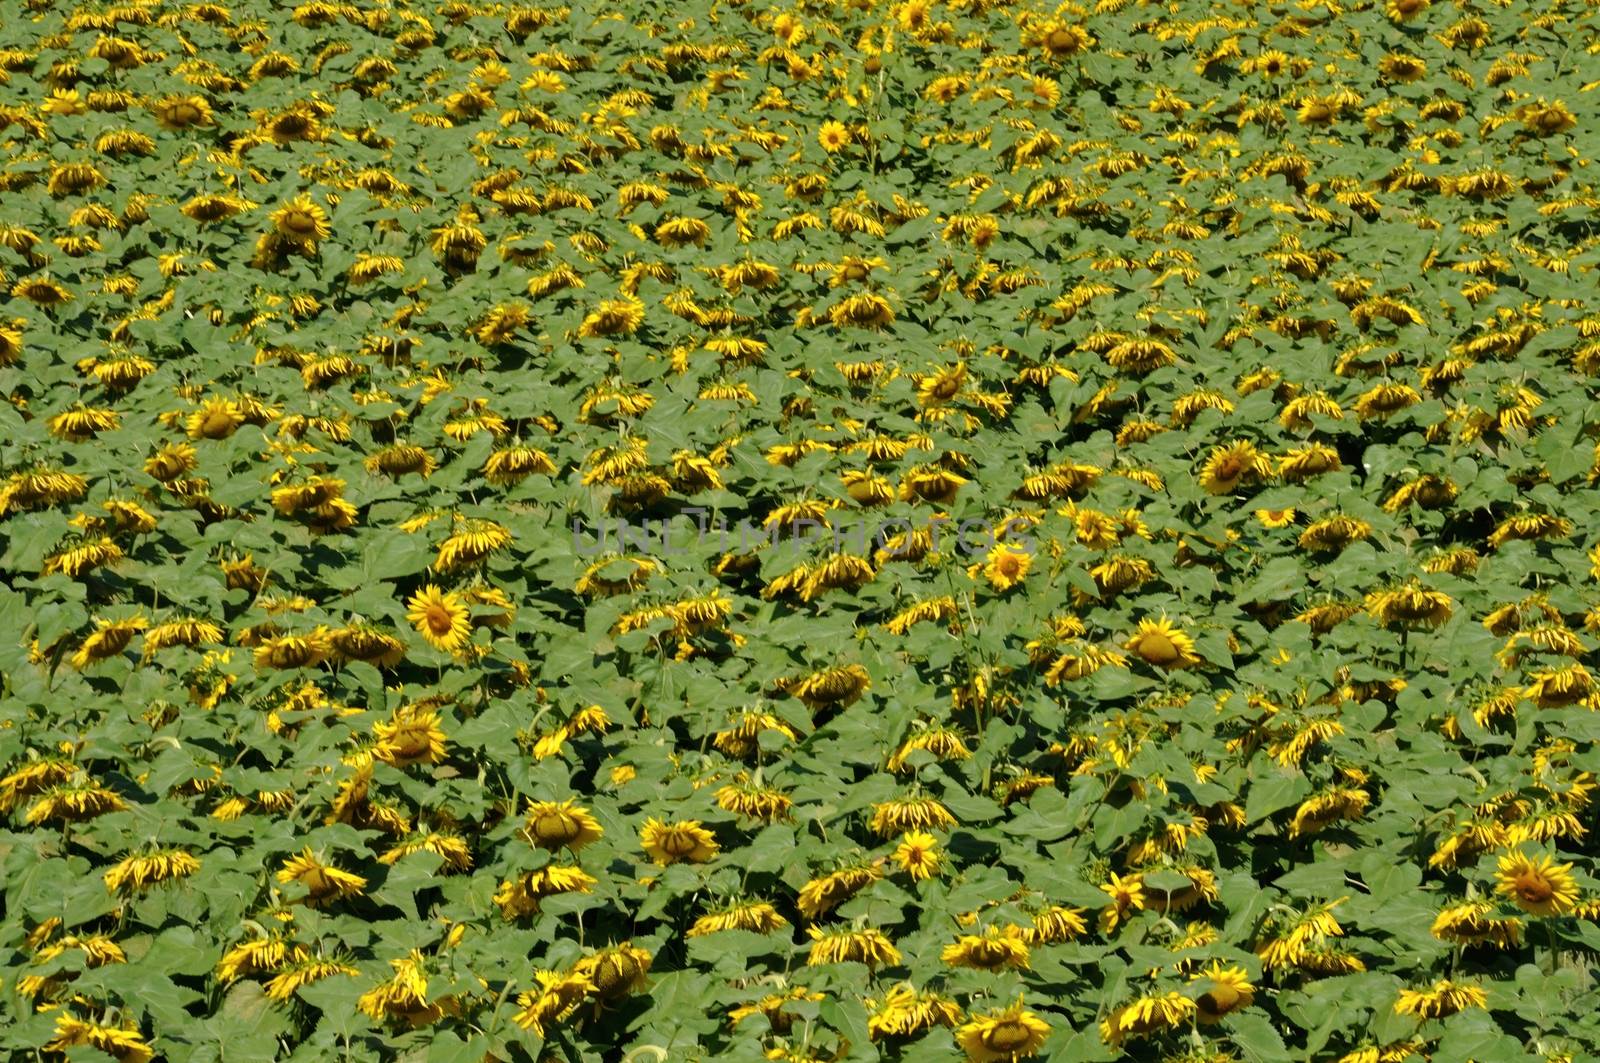 sun flower field 